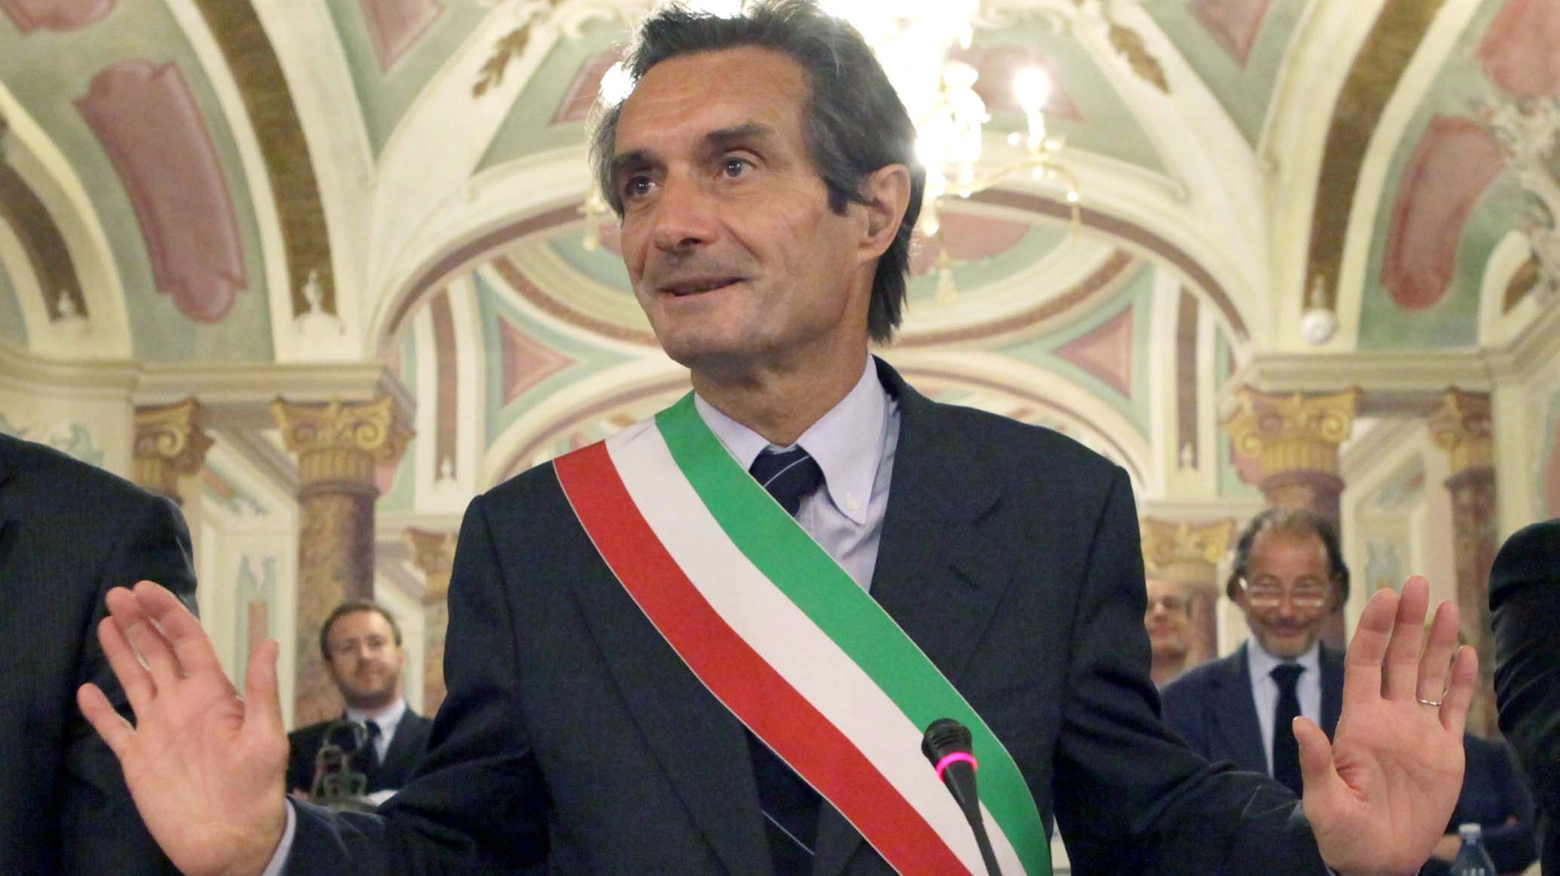 Il sindaco di Varese, Attilio Fontana